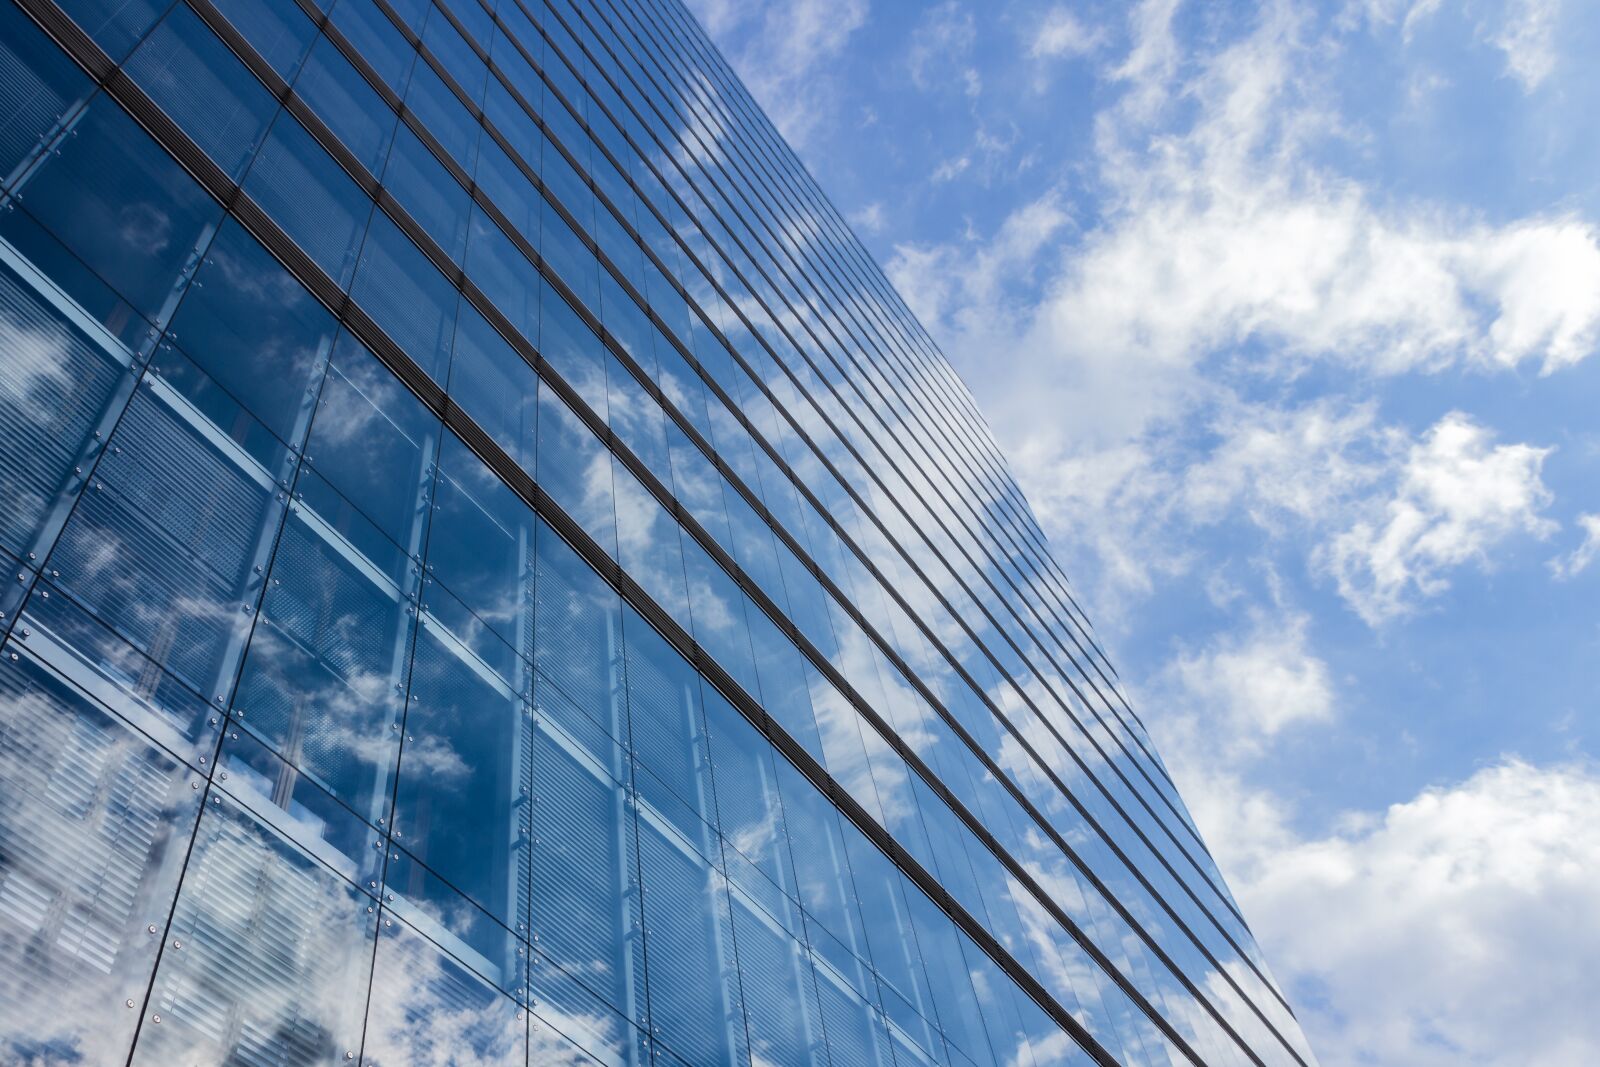 Canon EOS 7D sample photo. Architecture, facade, skyscraper photography